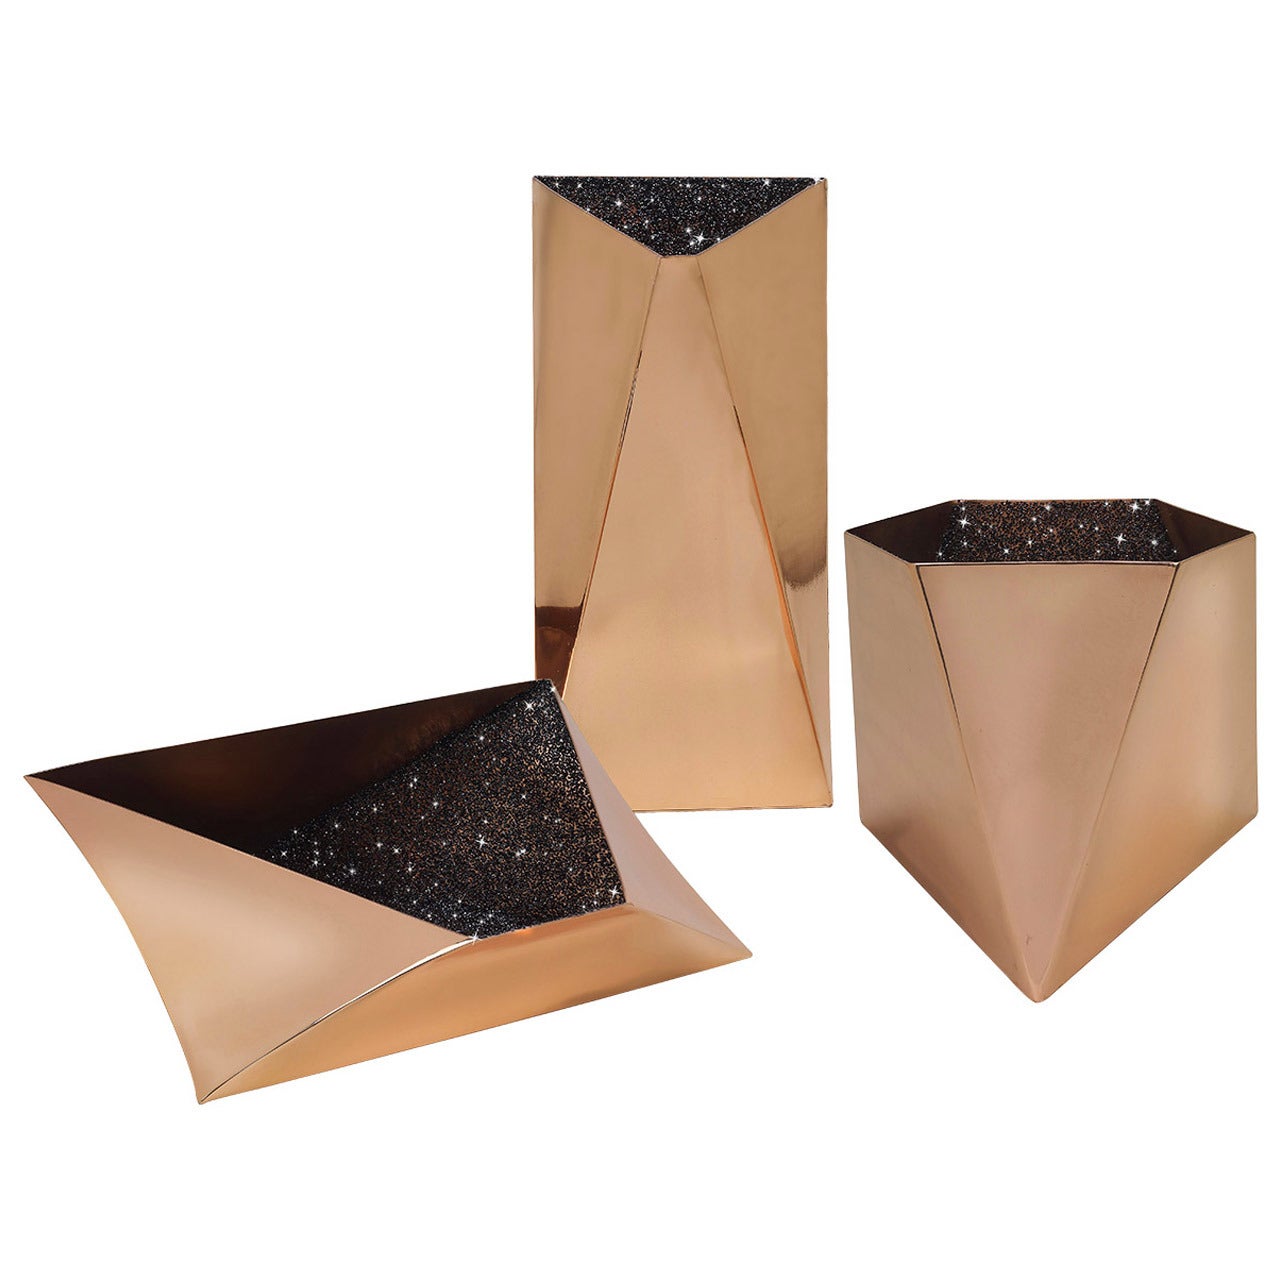 Star"-Kollektion Satz von drei Gefäßen oder Vasen von David Adjaye